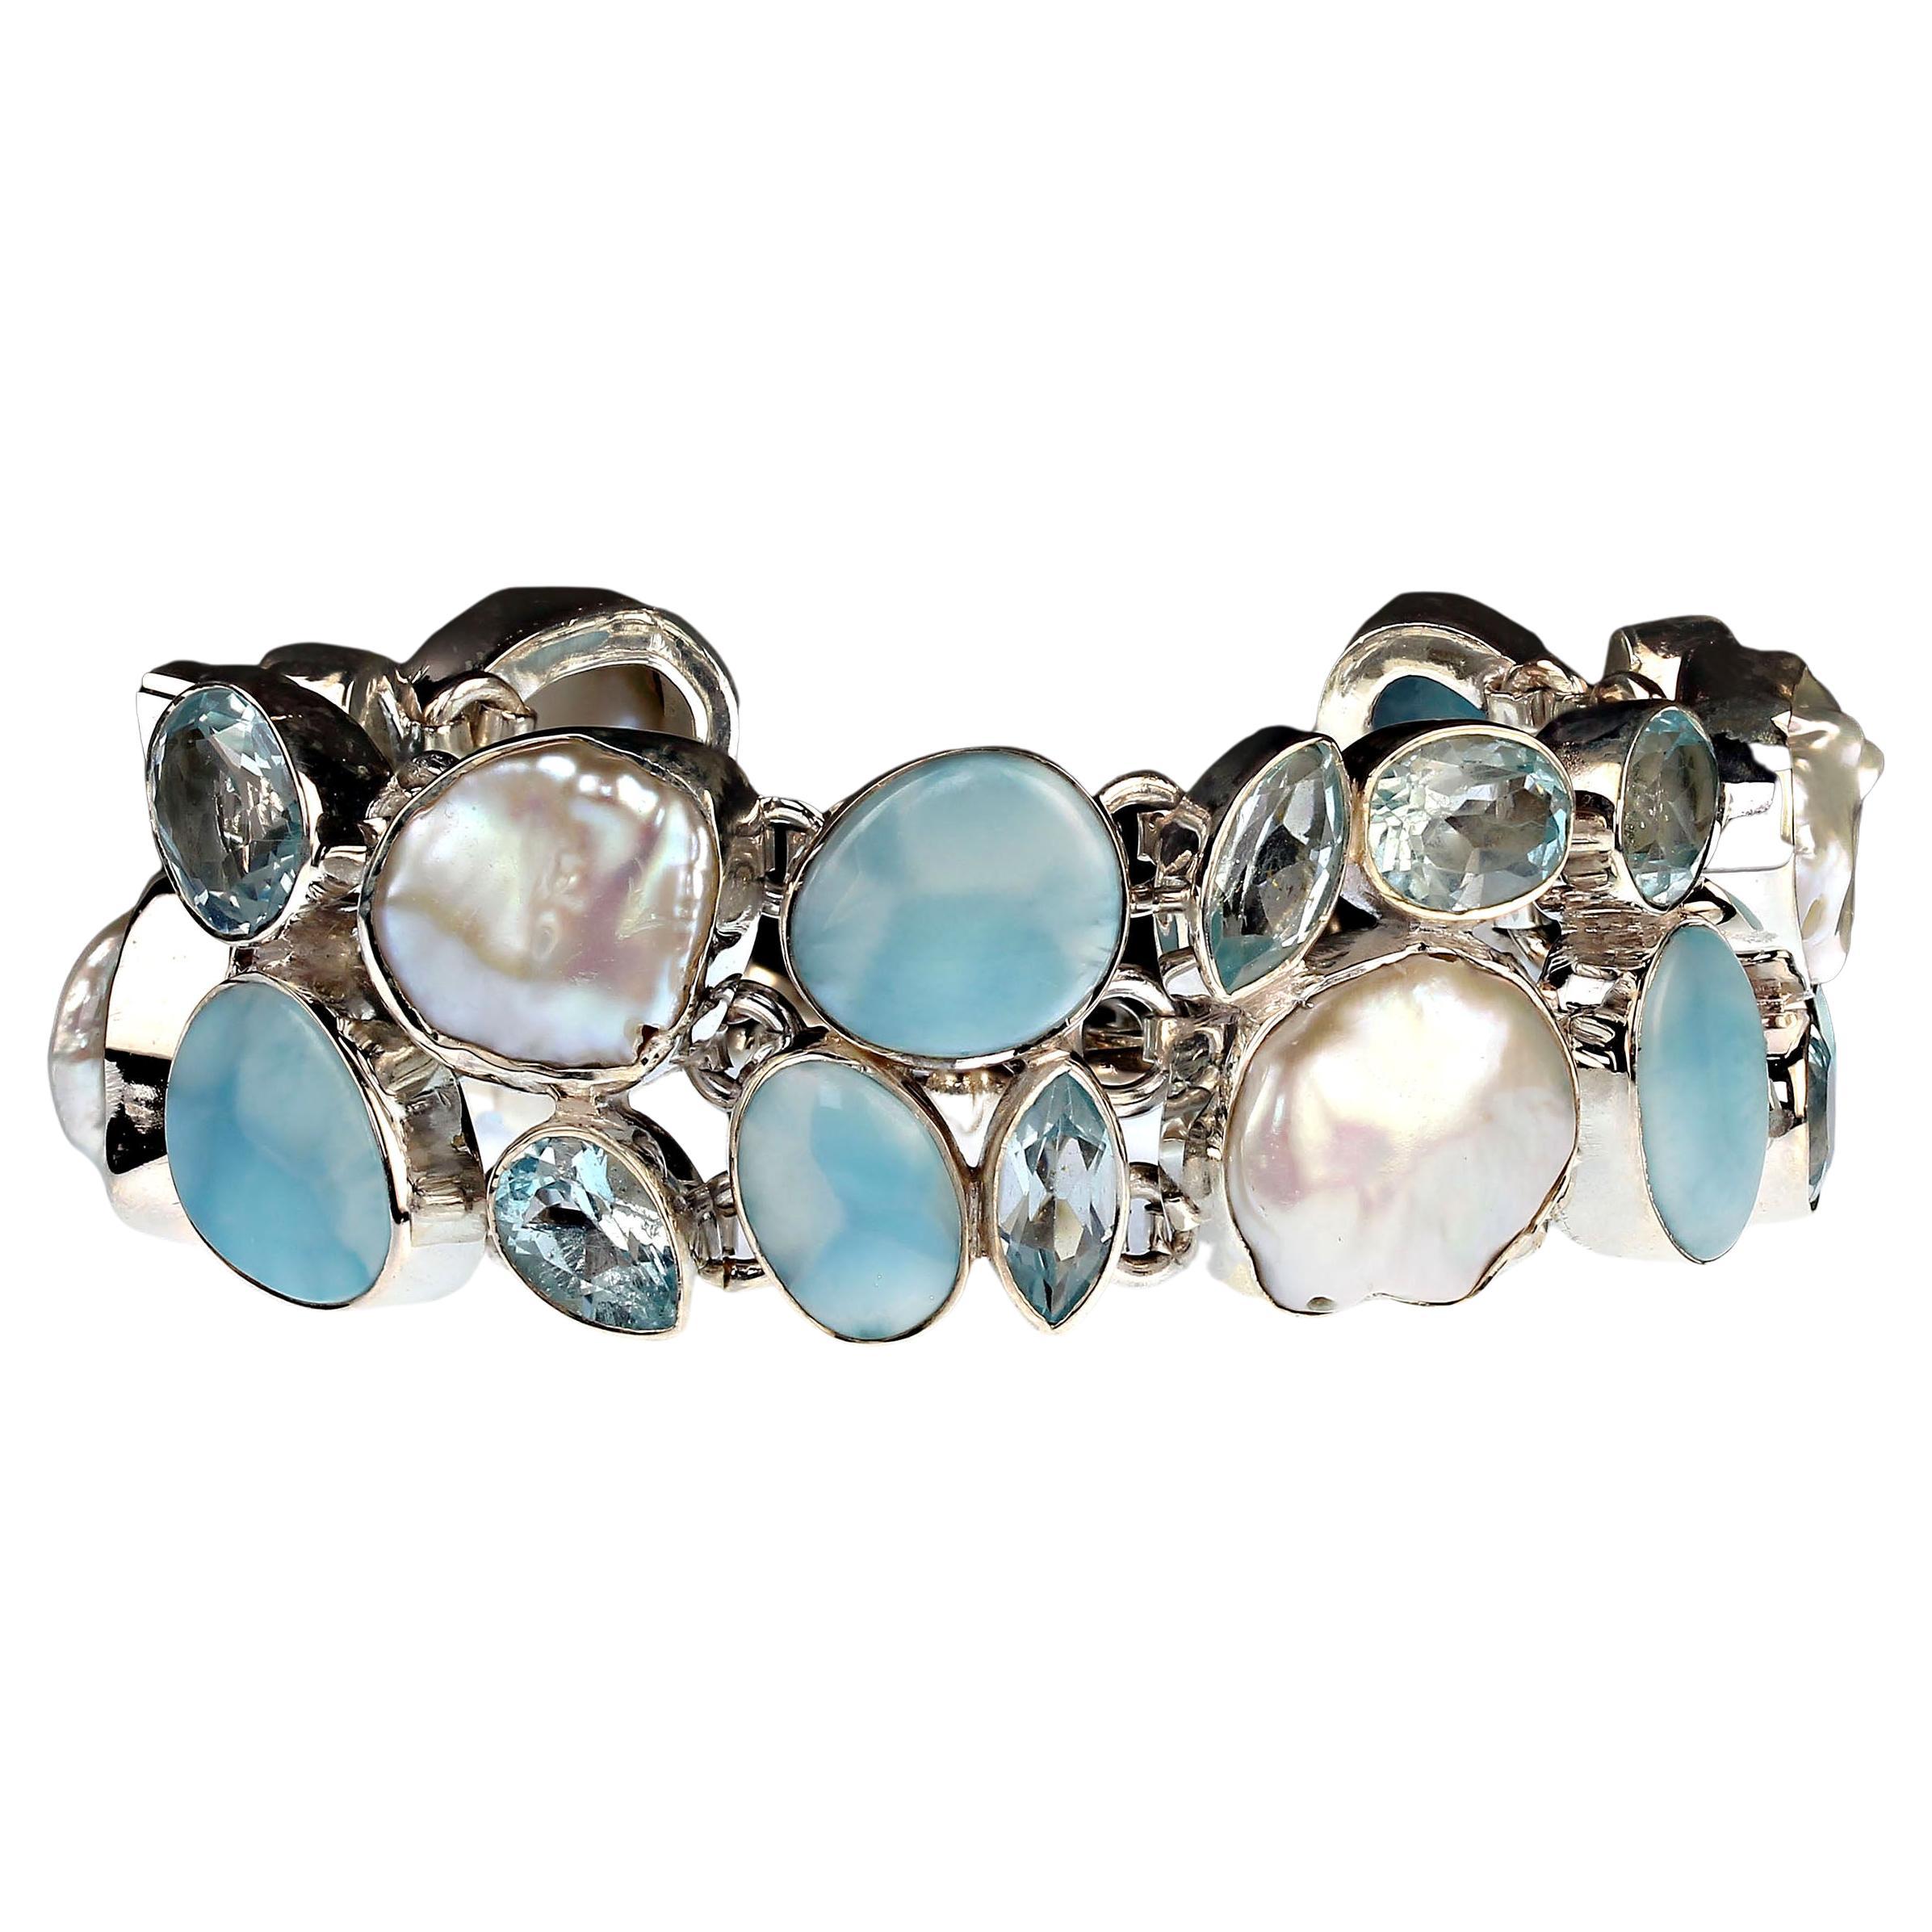 Wunderschönes Armband aus Biwa-Perle, blauem Topas und Larimar.  Tragen Sie dieses wunderschöne Armband und fühlen Sie sich wie eine Million Dollar!  Es ist so wunderschön.  Der Edelstein überspannt etwas mehr als 5 Zoll und ist 7/8 Zoll breit.  Das